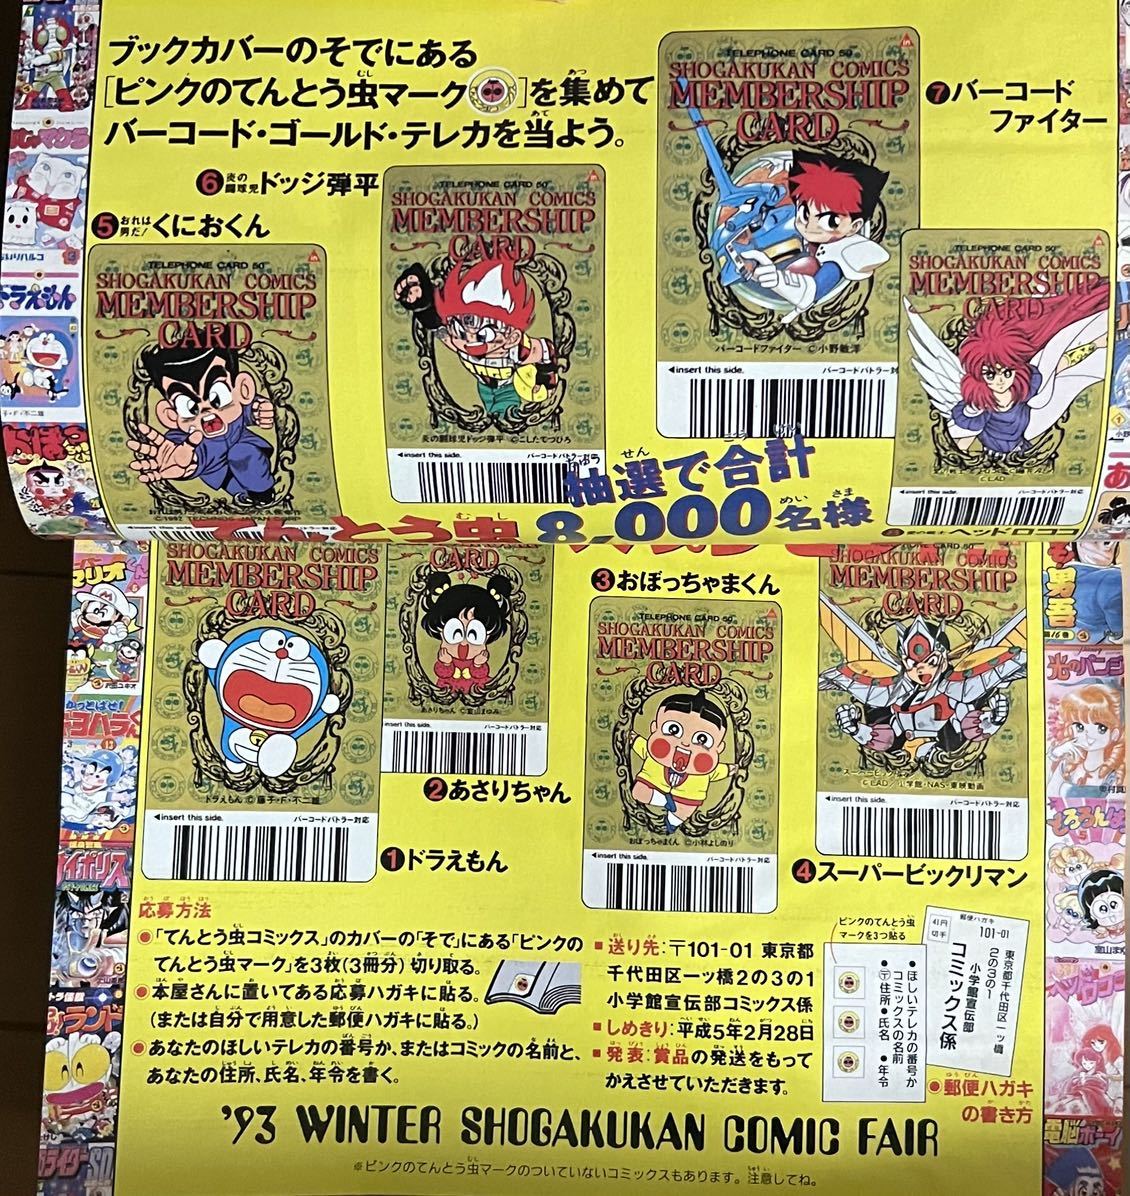 月刊コロコロコミック 1993年2月号 1995年11月号 1992年9月号 10月号 ビーダマン ビックリマン スーパーマリオ 付録 カード ミニ四駆_画像5